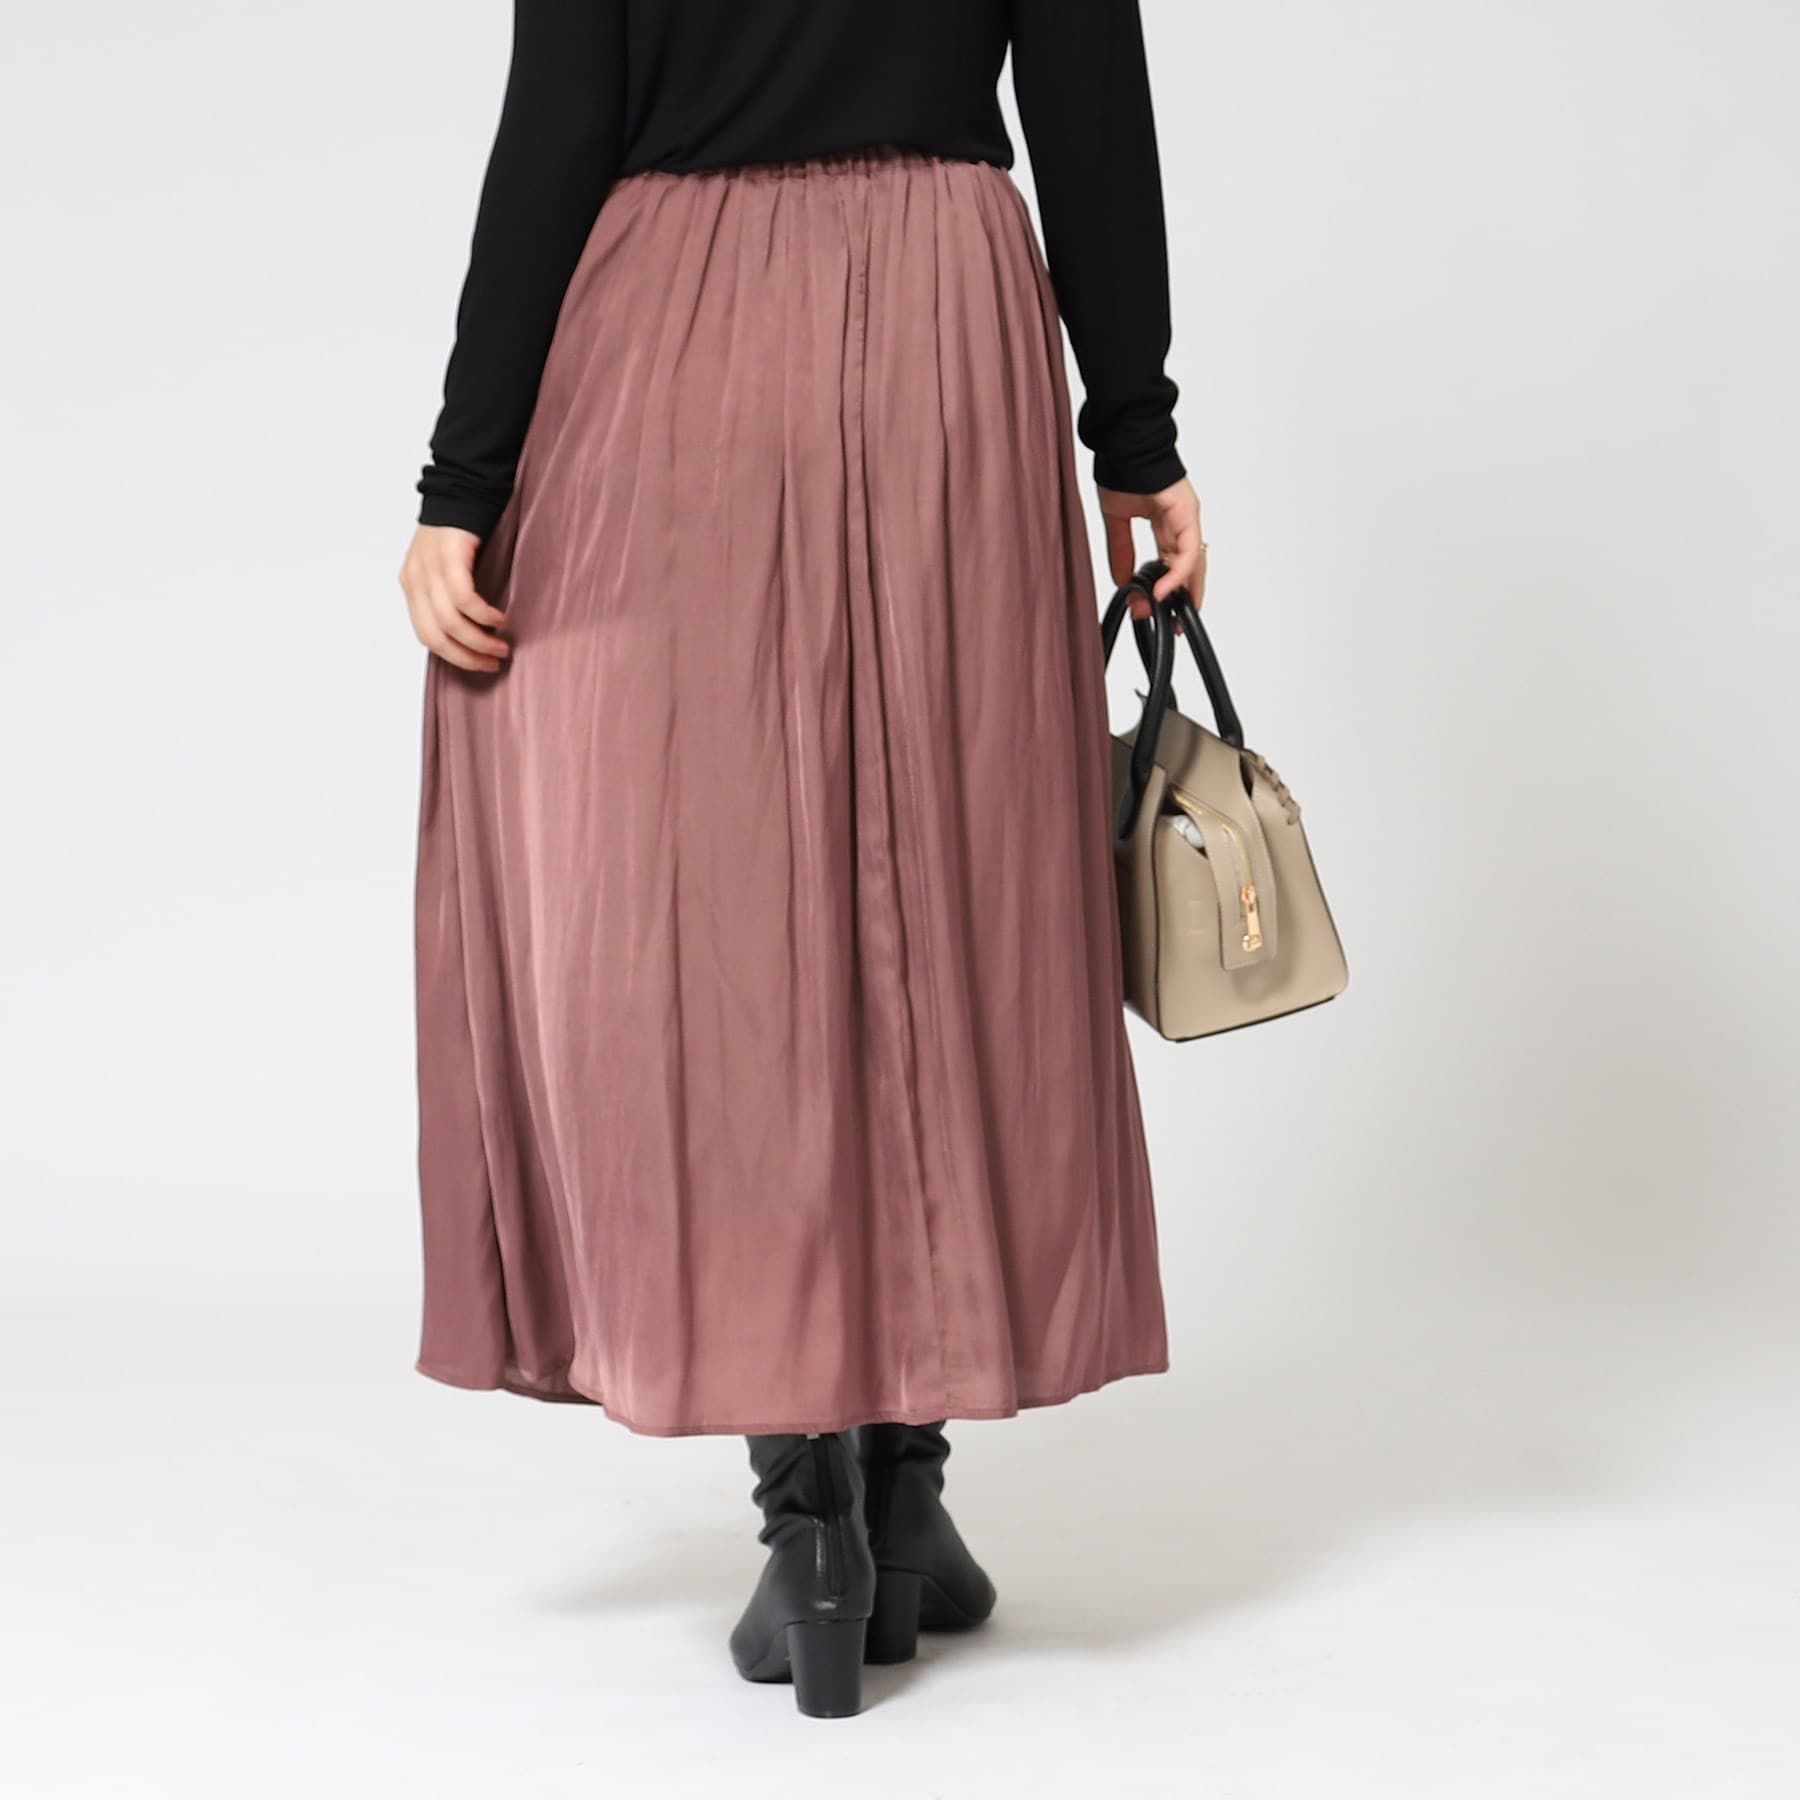 シューラルー/ドレスキップ(SHOO・LA・RUE/DRESKIP)の女性らしさあふれる サテンギャザースカート14